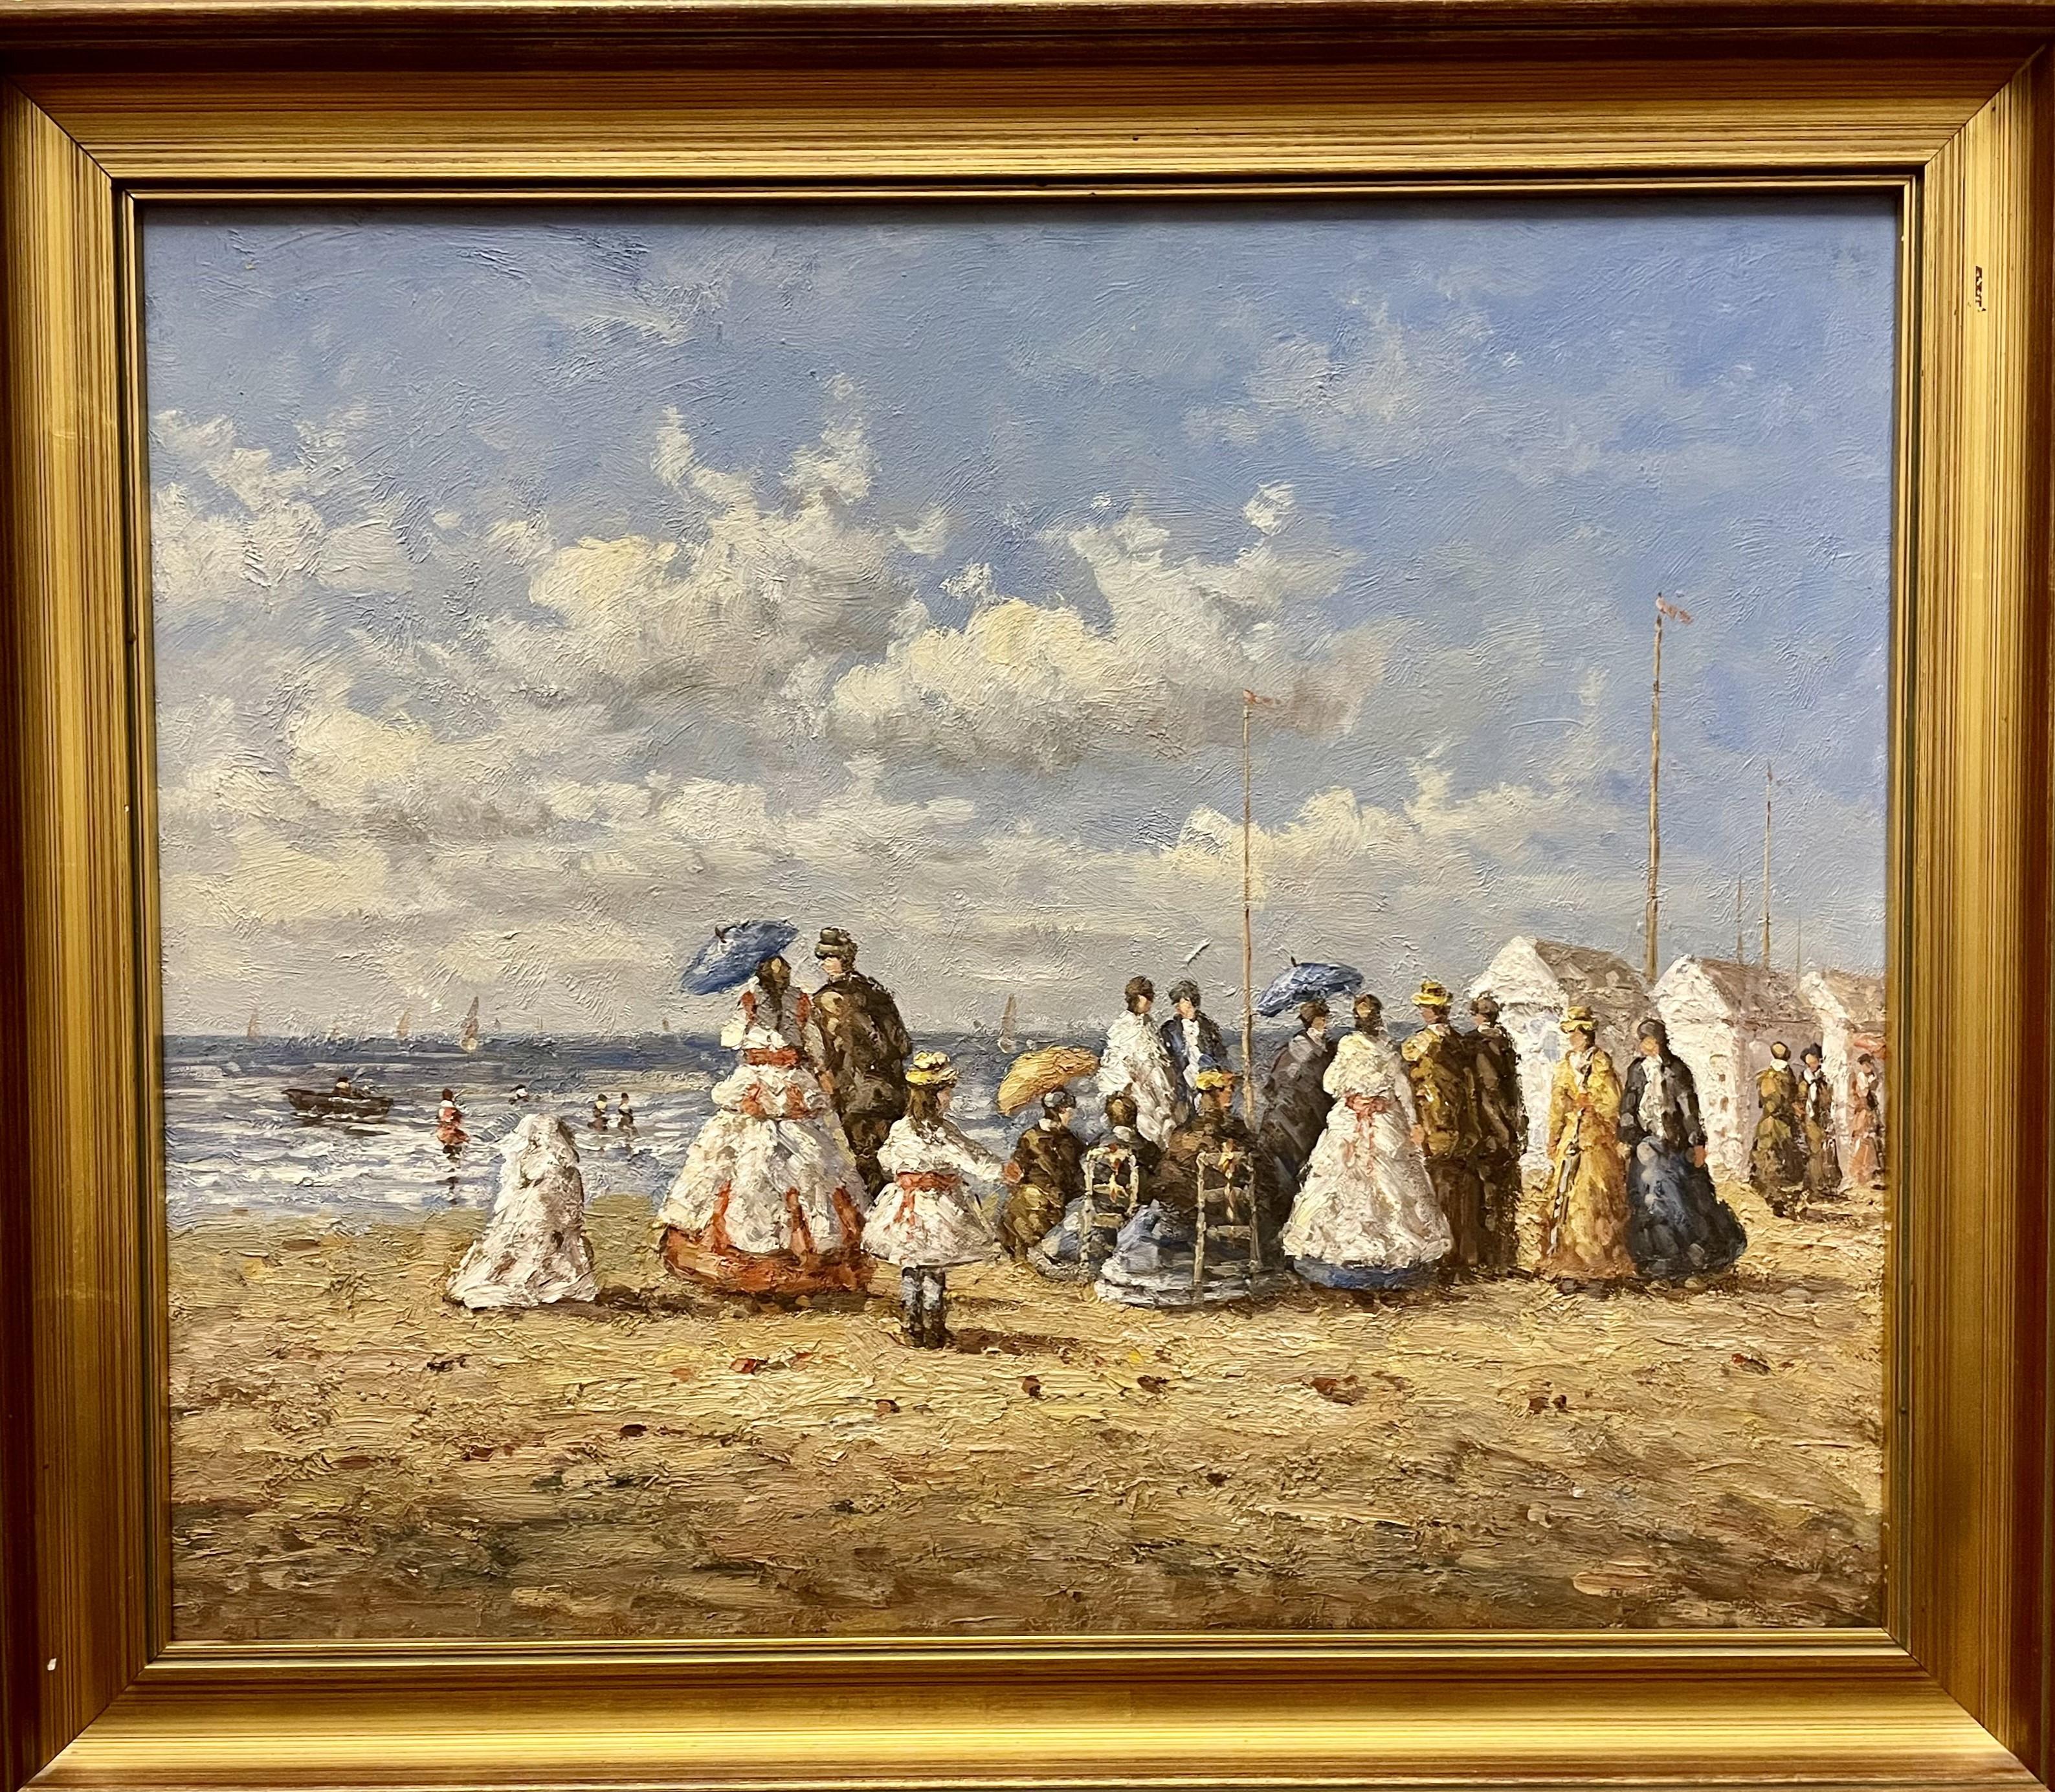 Landscape Painting Unknown - Huile sur toile britannique du 20e siècle, scène de plage édouardienne